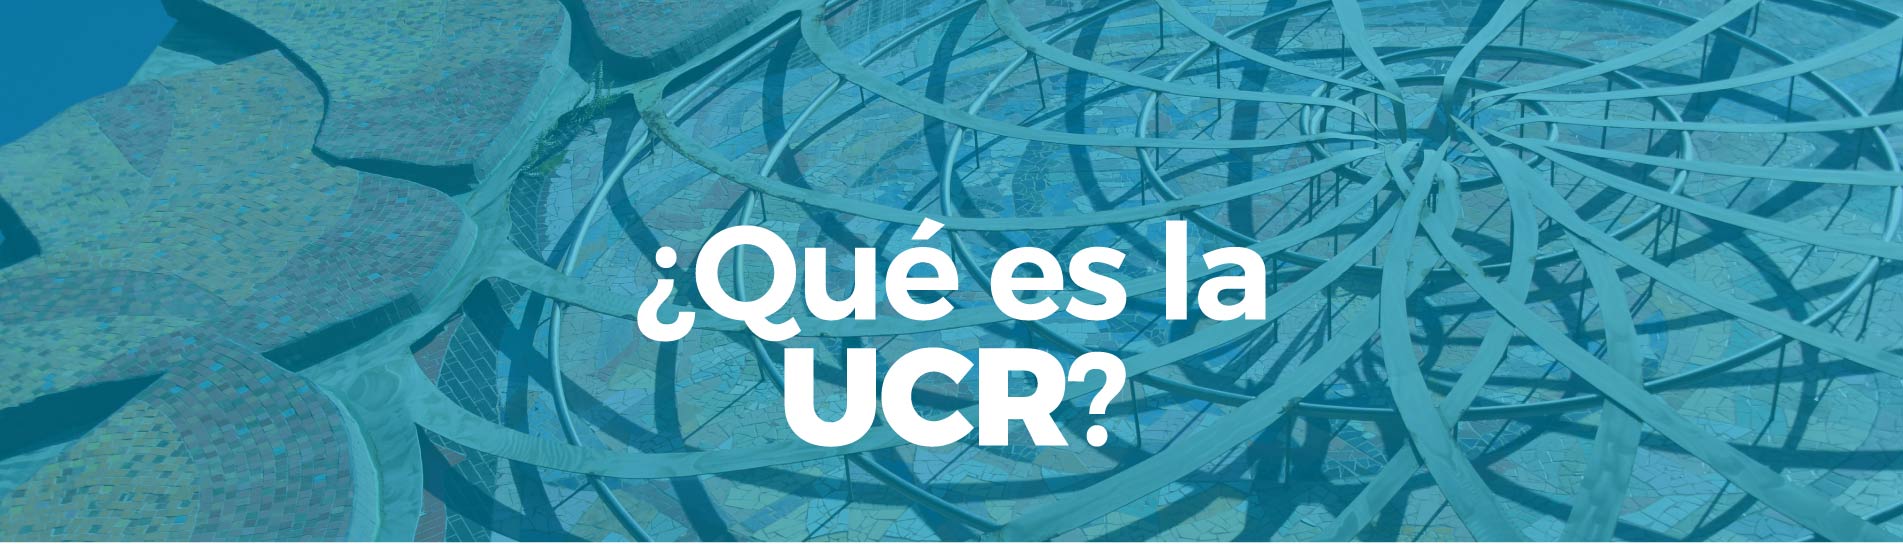 ¿Qué es la UCR?